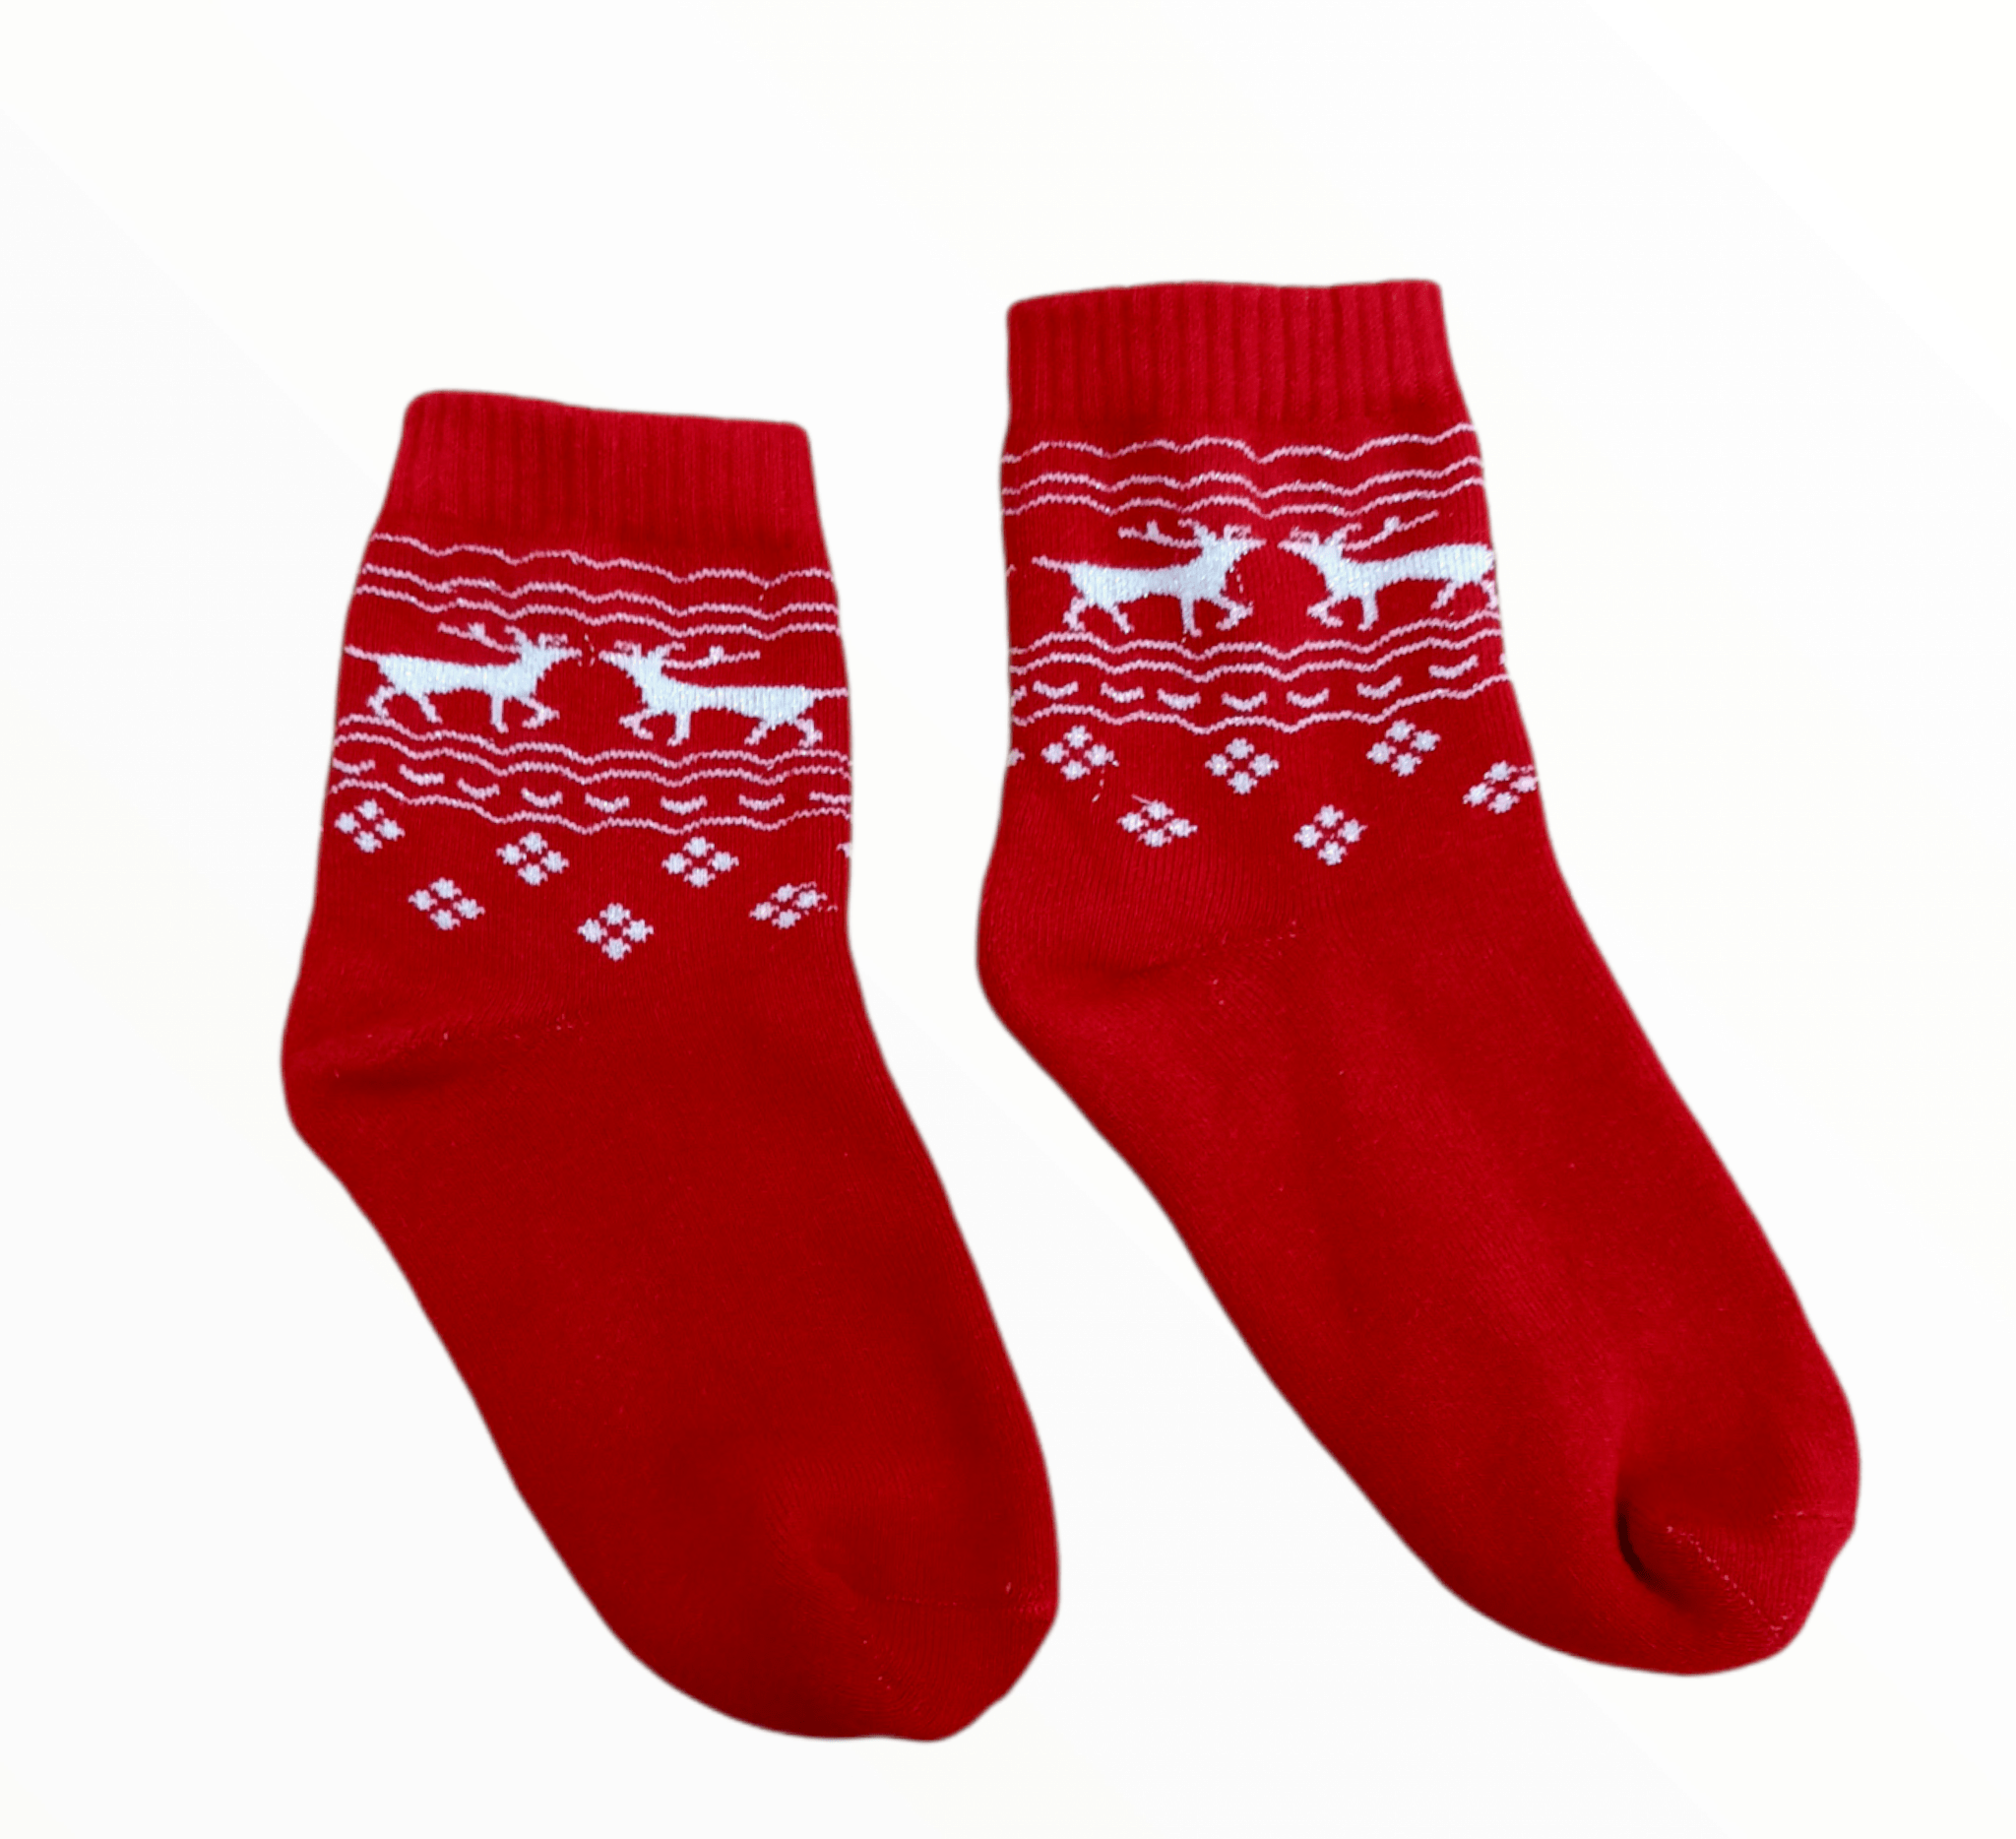 ElOutlet (Unisex - Men & Women) Christmas Socks - One-Size - 11